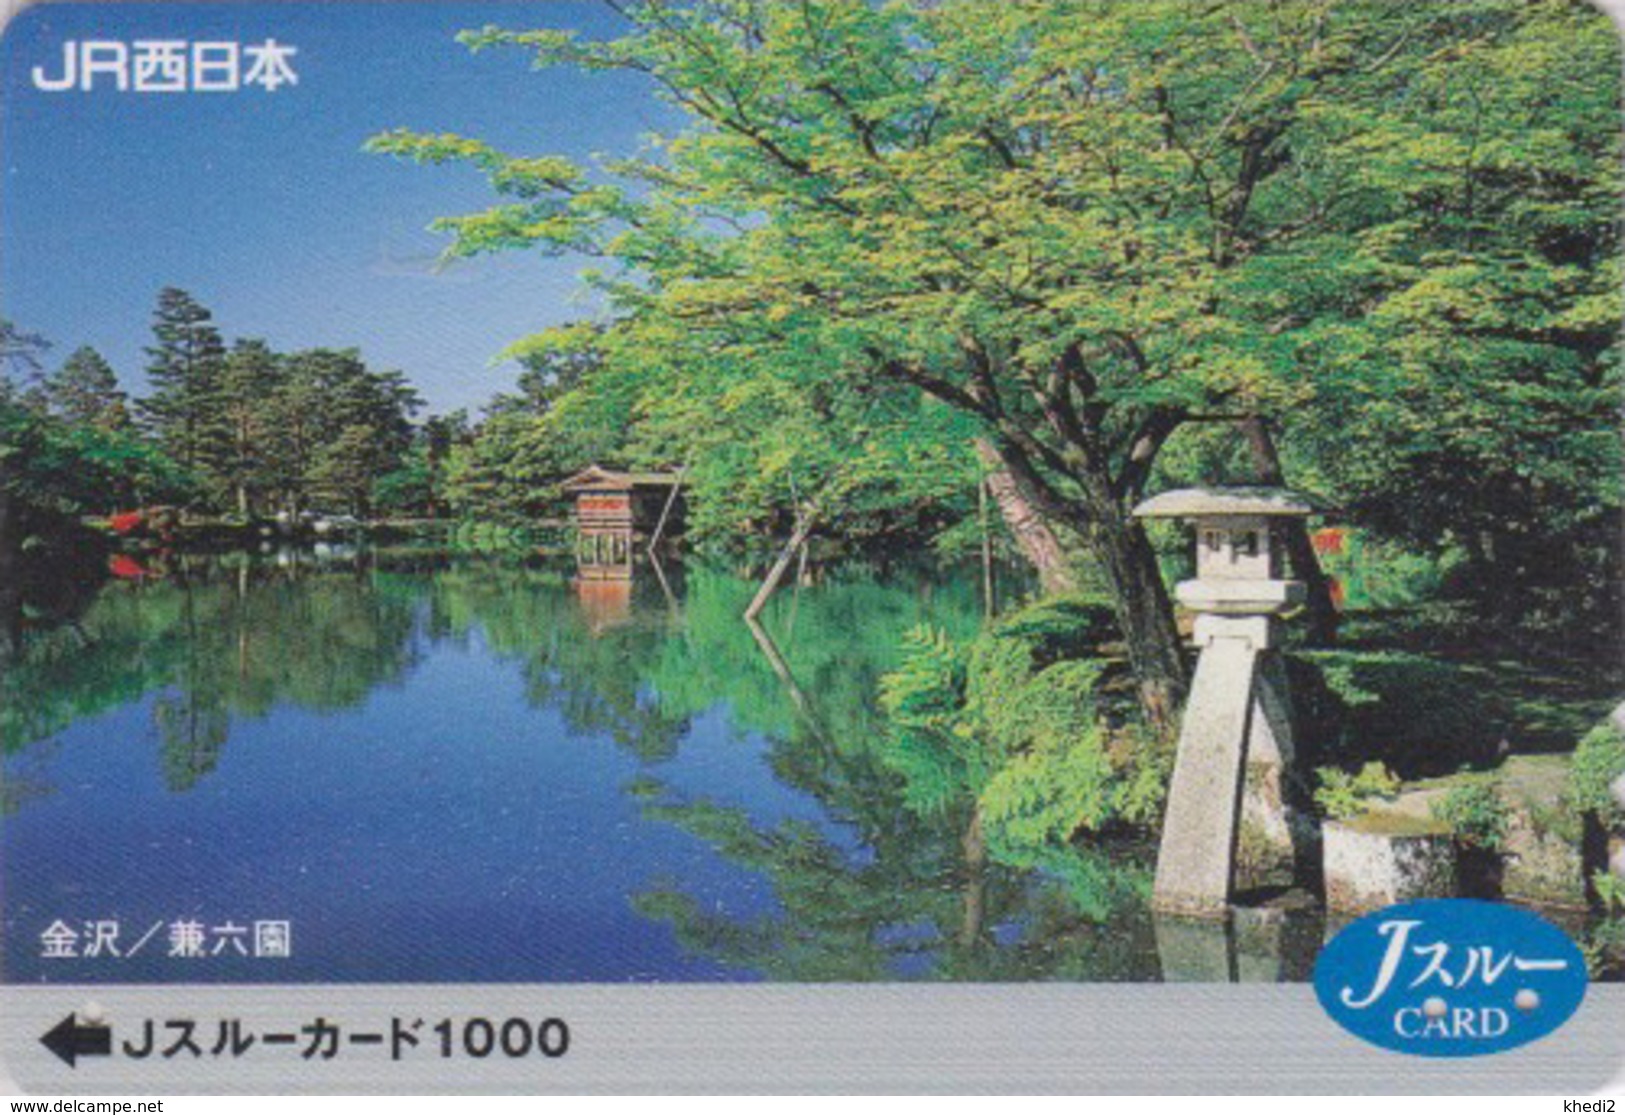 Carte Prépayée Japon - Paysage Aquatique - LAC - LAKE - Landscape Japan Prepaid JR J Card - Landschaften